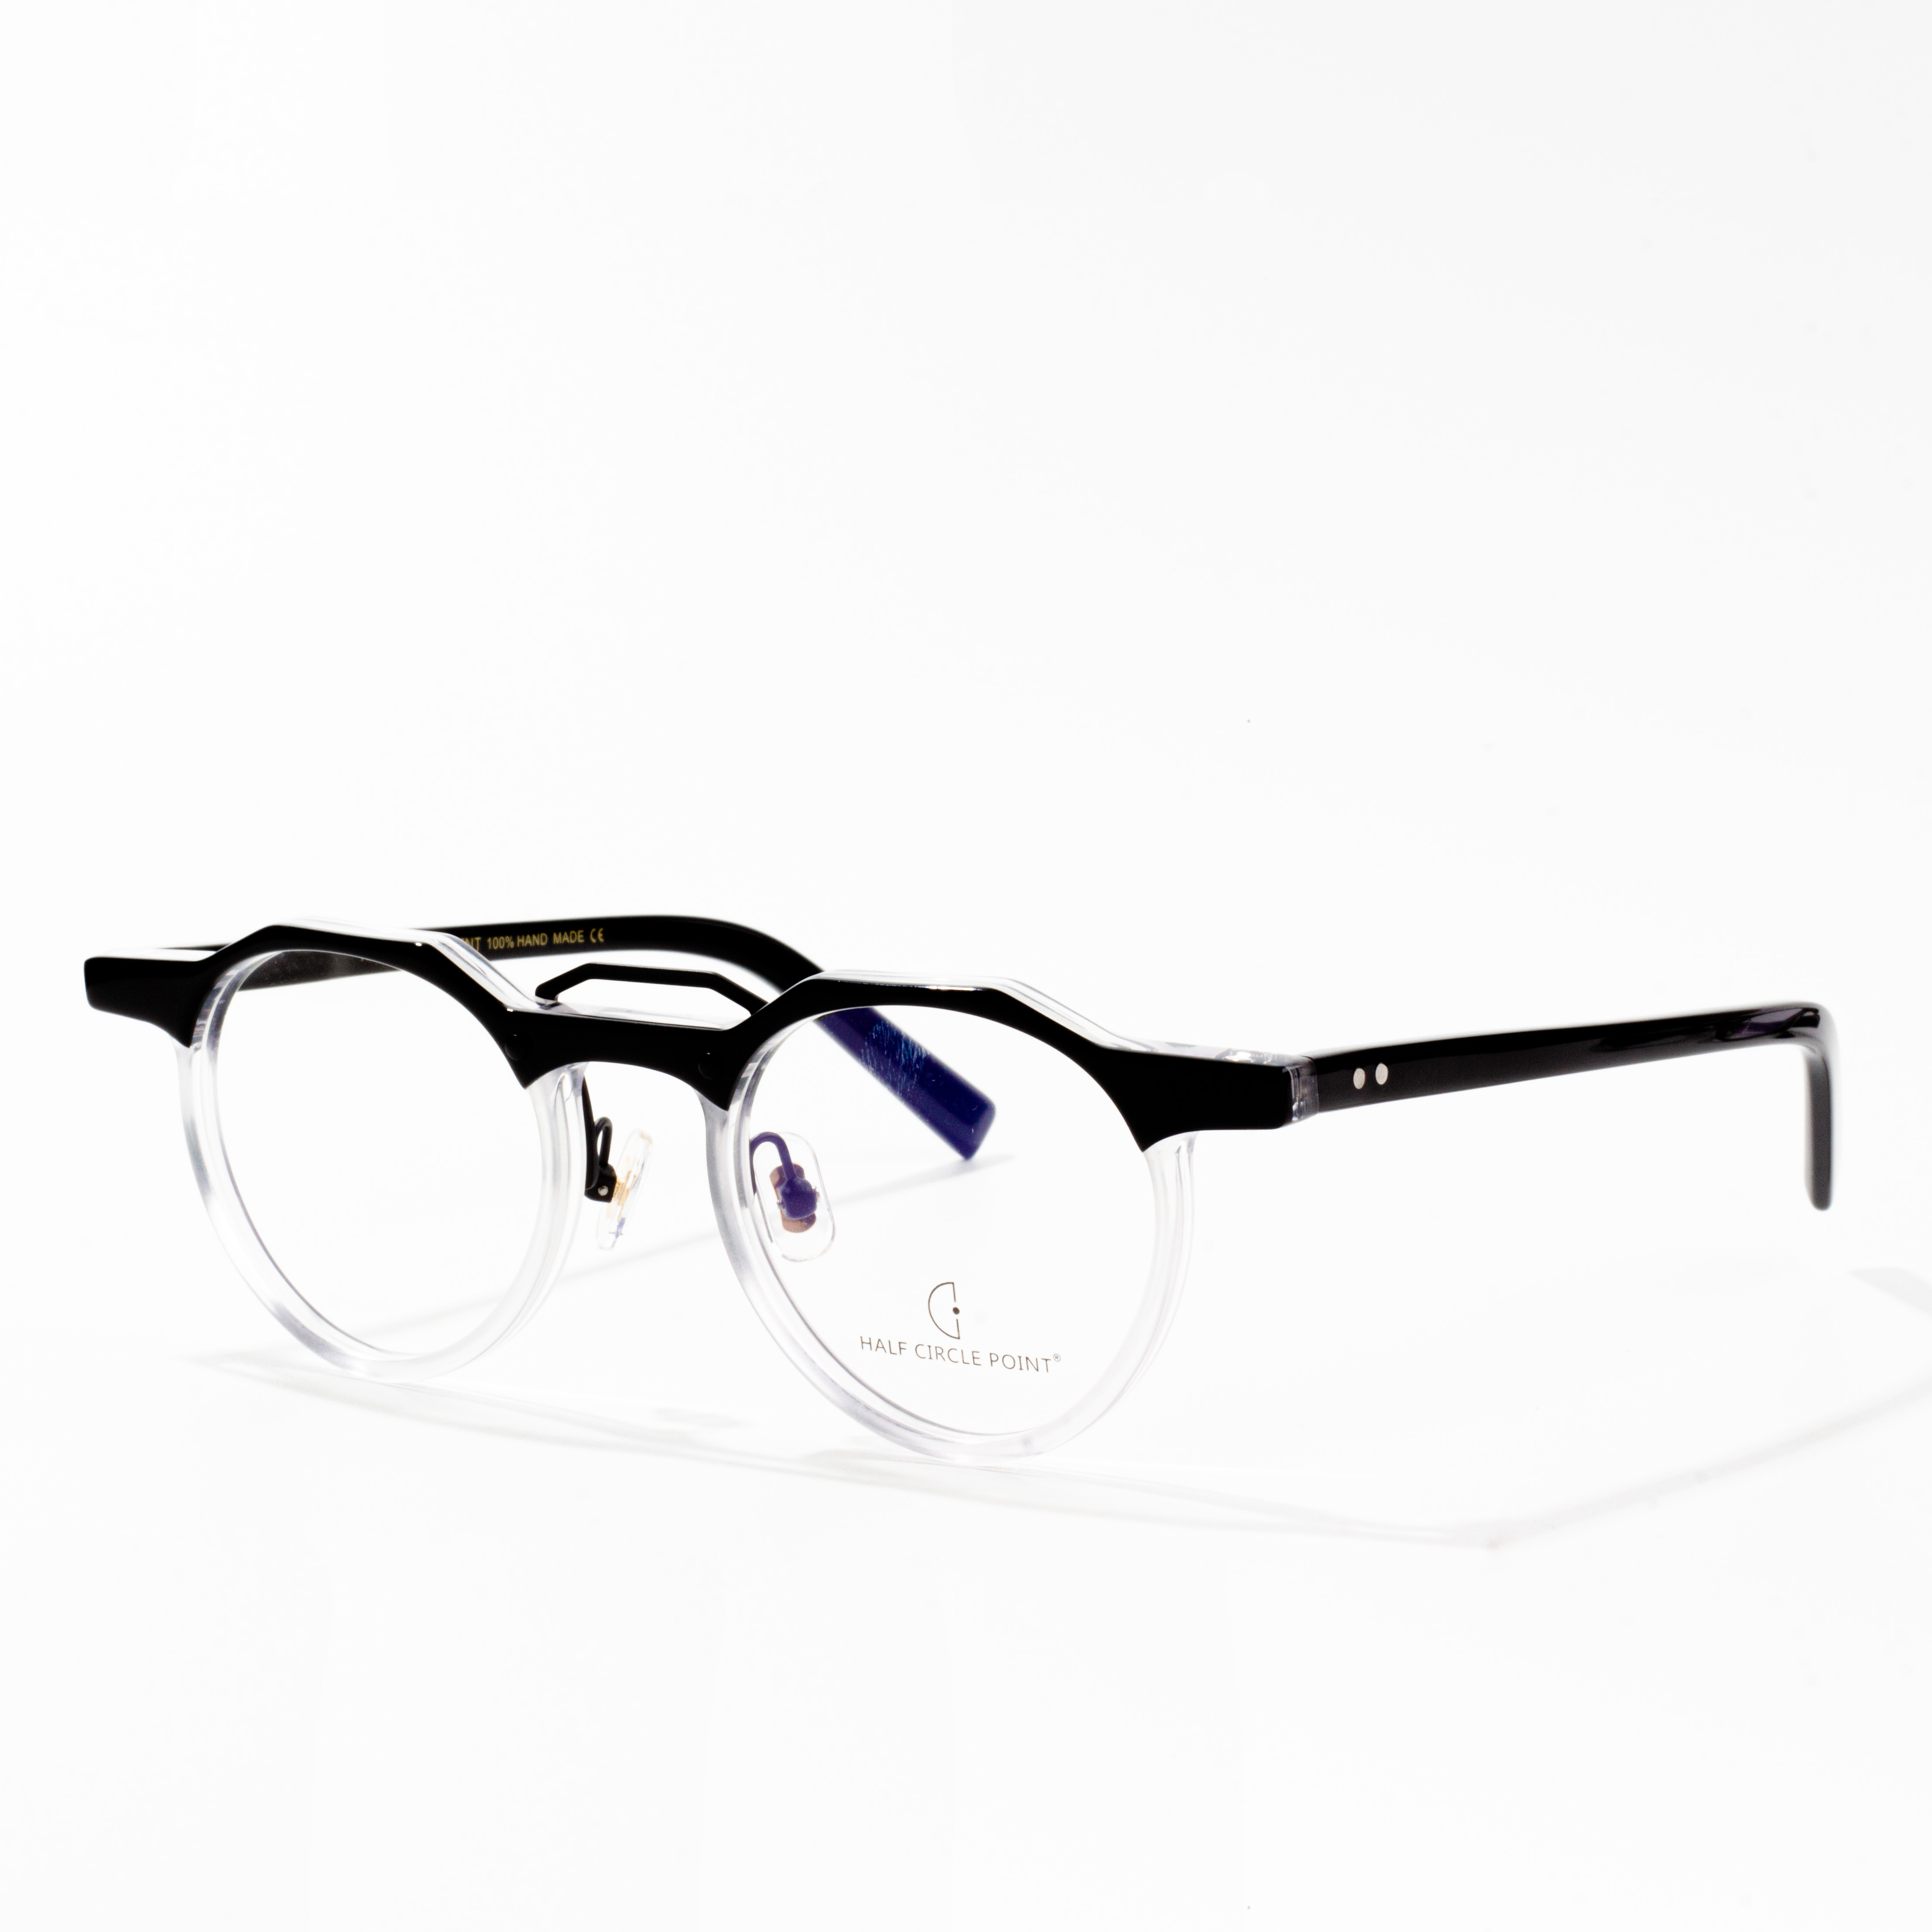 octanowe oprawki do okularów